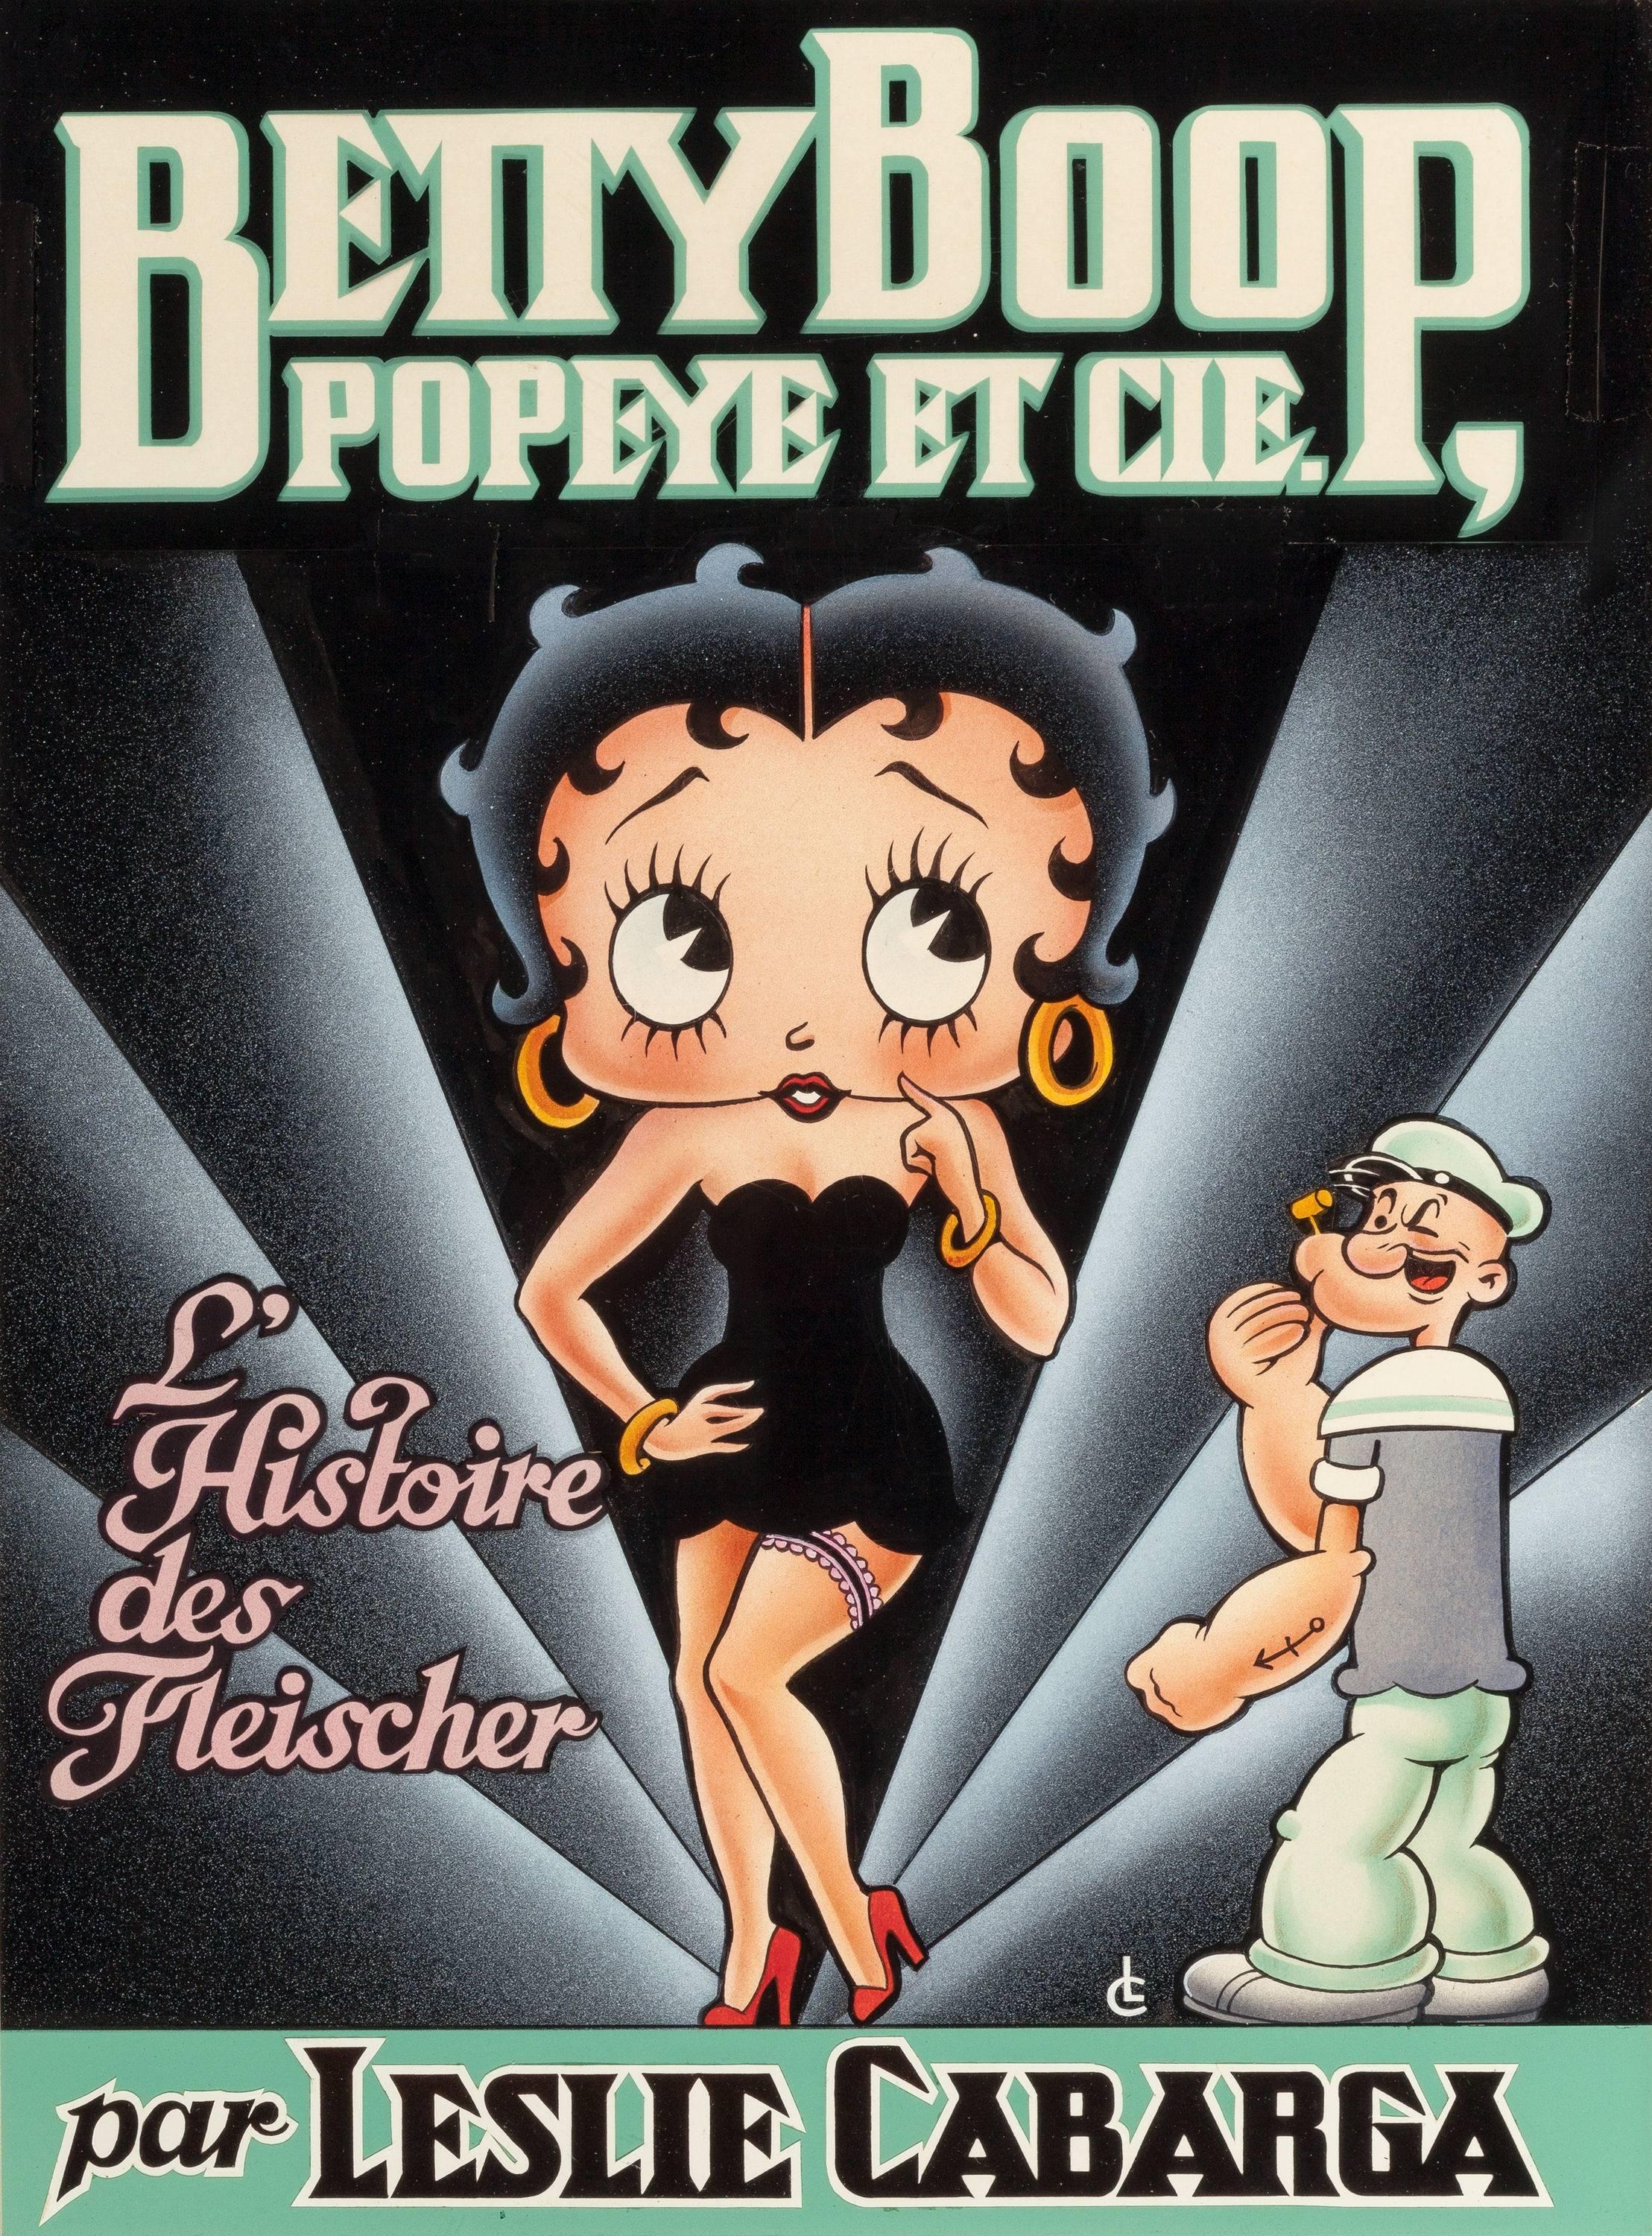 BetBoop, Popeye et Cie, L'Histoire des Fleischer - Mixed Media Art by Leslie Cabarga